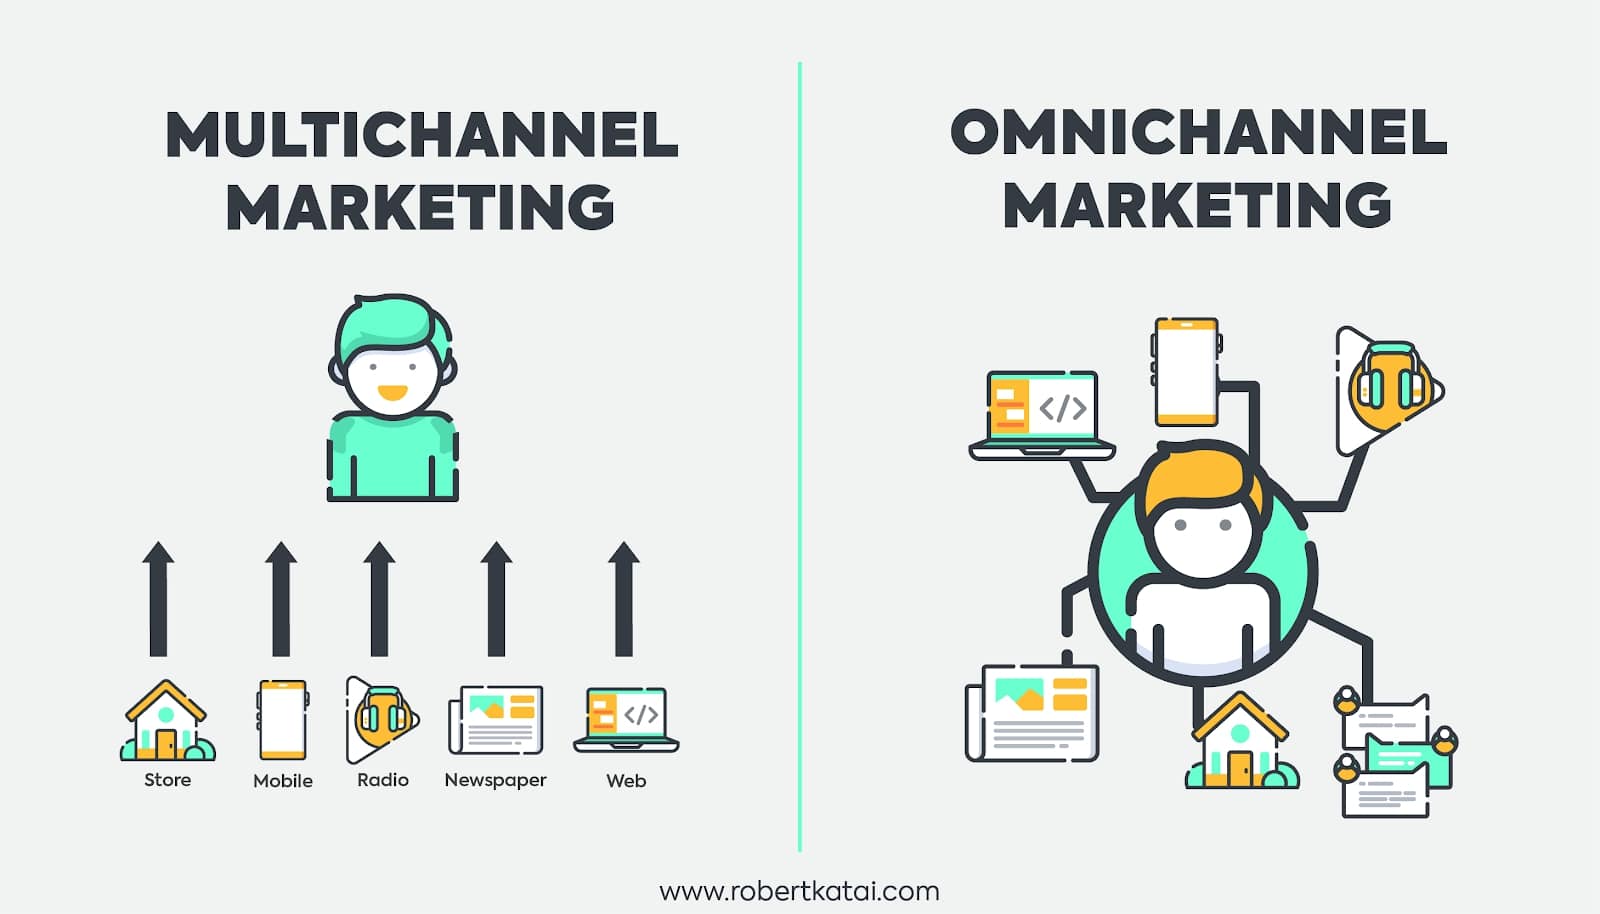 Multichannel marketing vs. omnichannel marketing